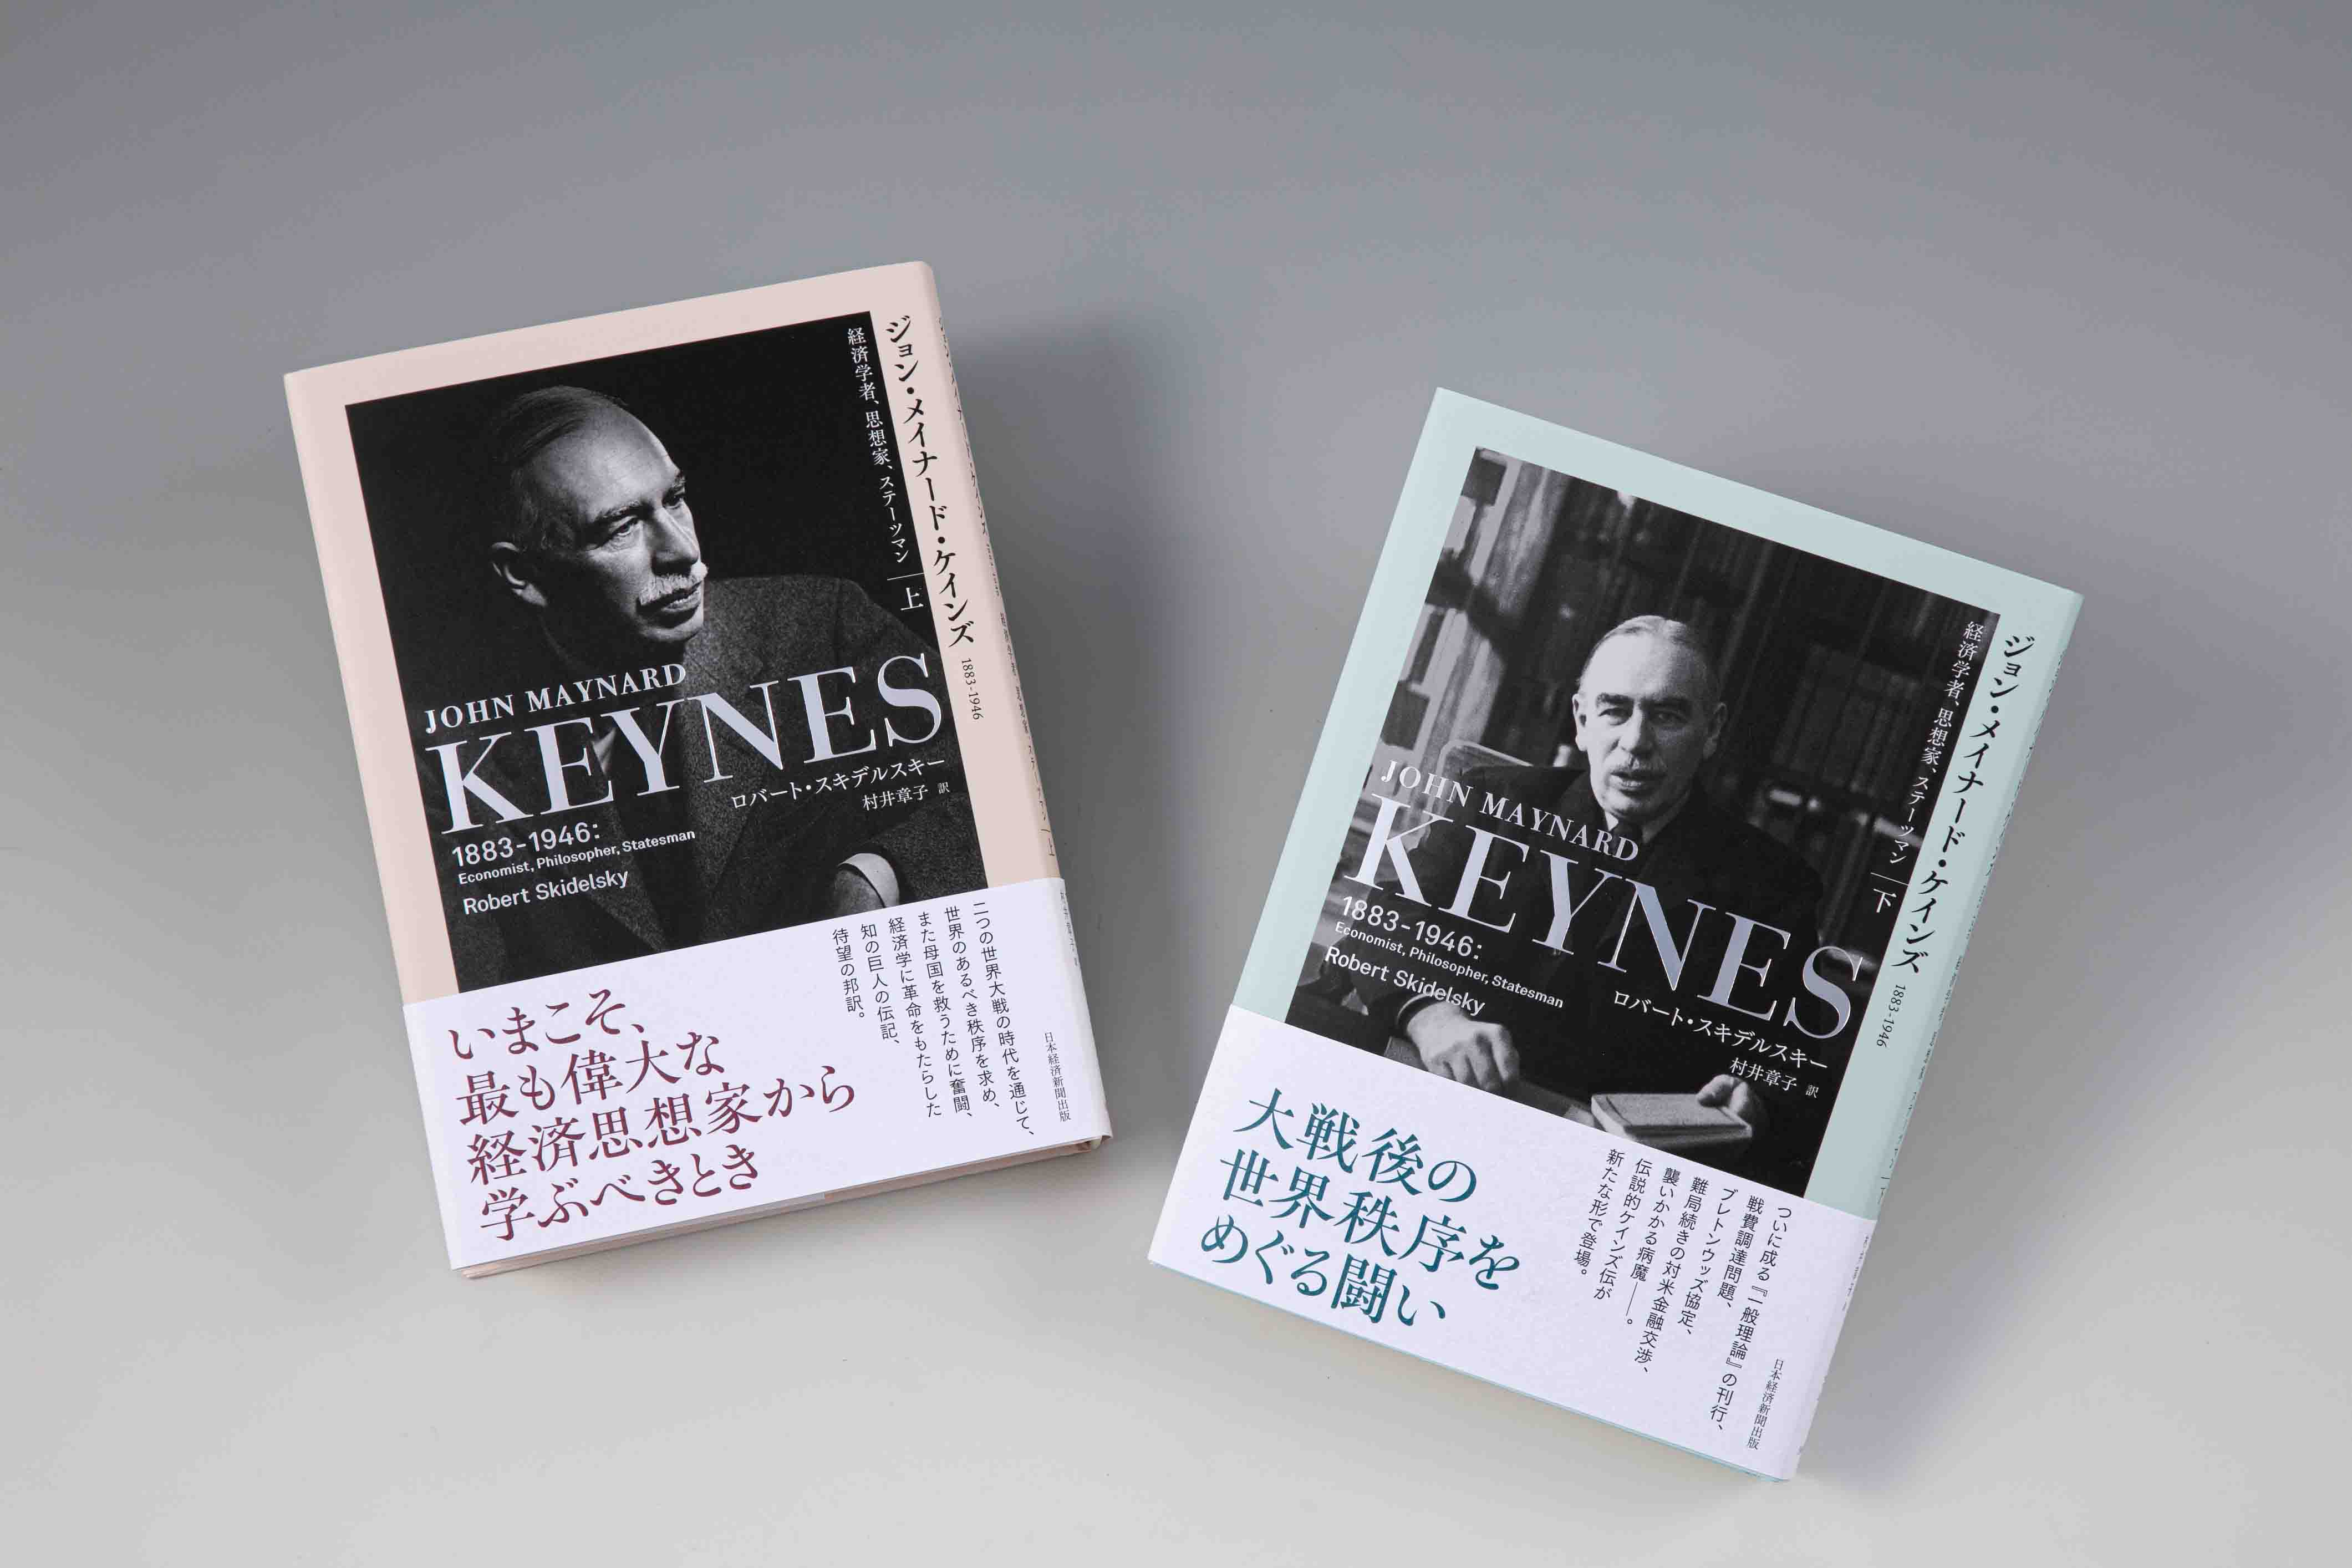 型破りの天才・ケインズ 20世紀を代表する経済学者の伝記 | 日経BOOKプラス